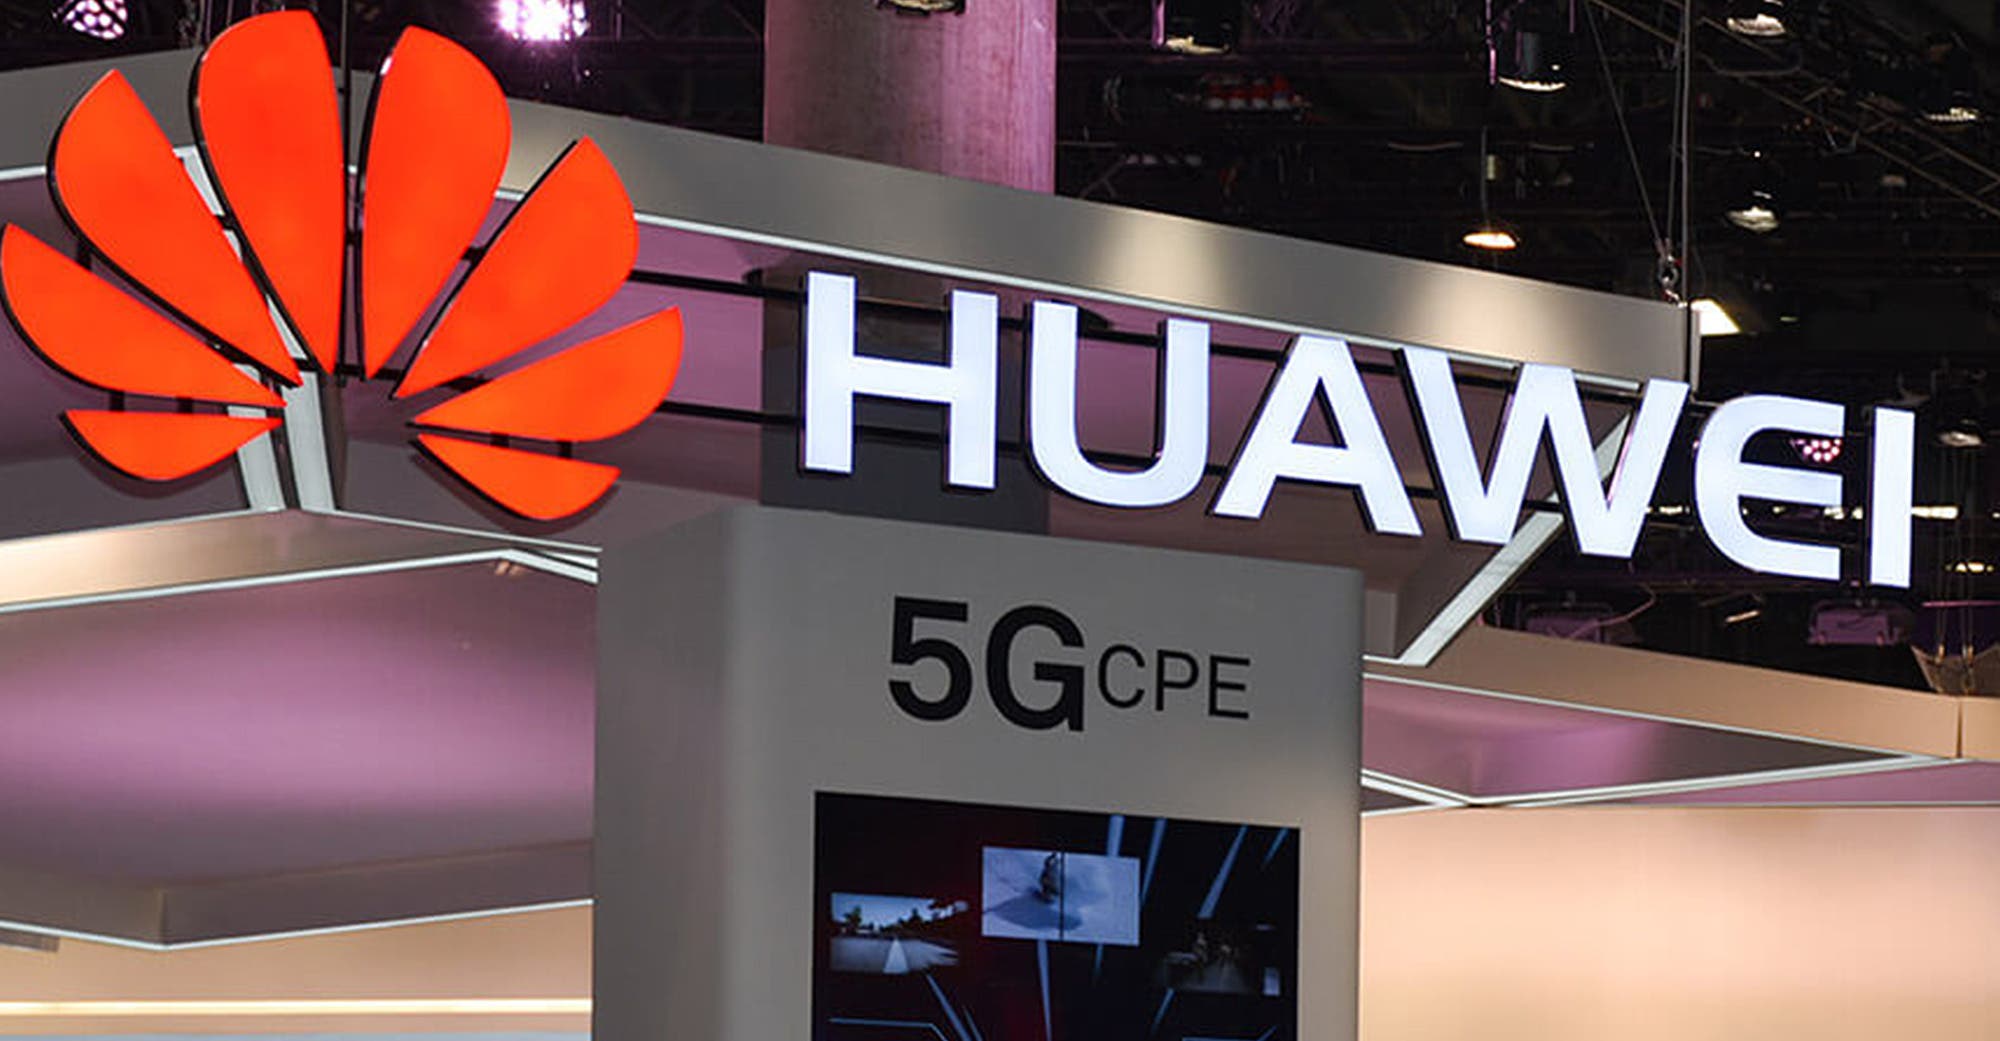 Huawei's 5G core network